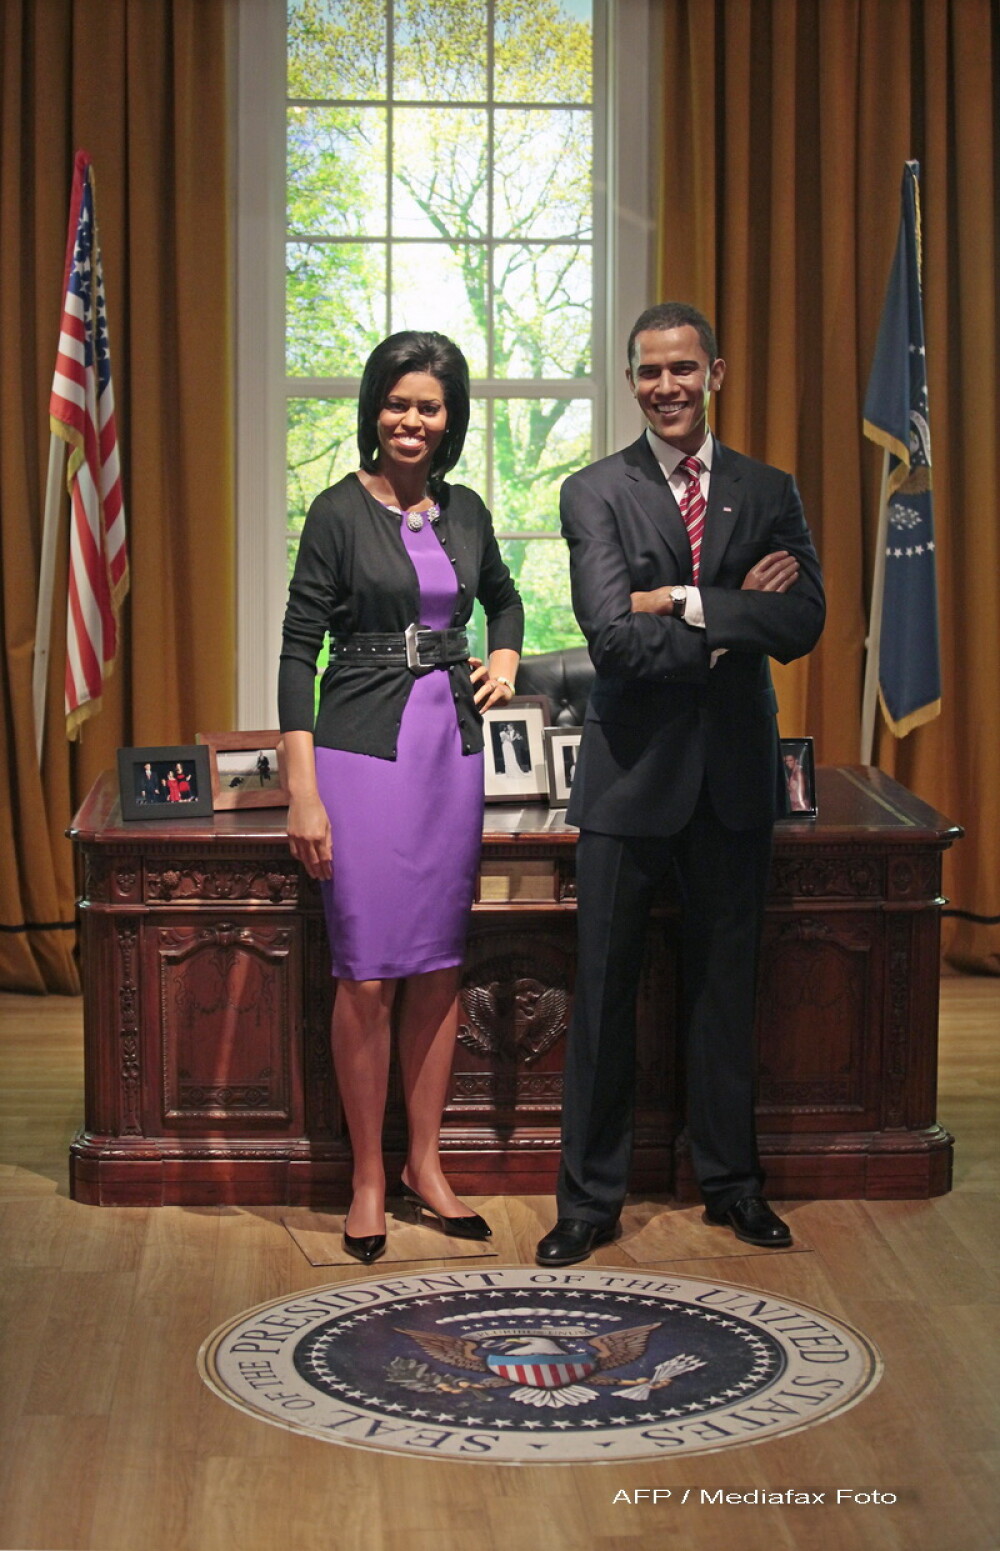 Si Michelle Obama are statuie de ceara - Imaginea 2